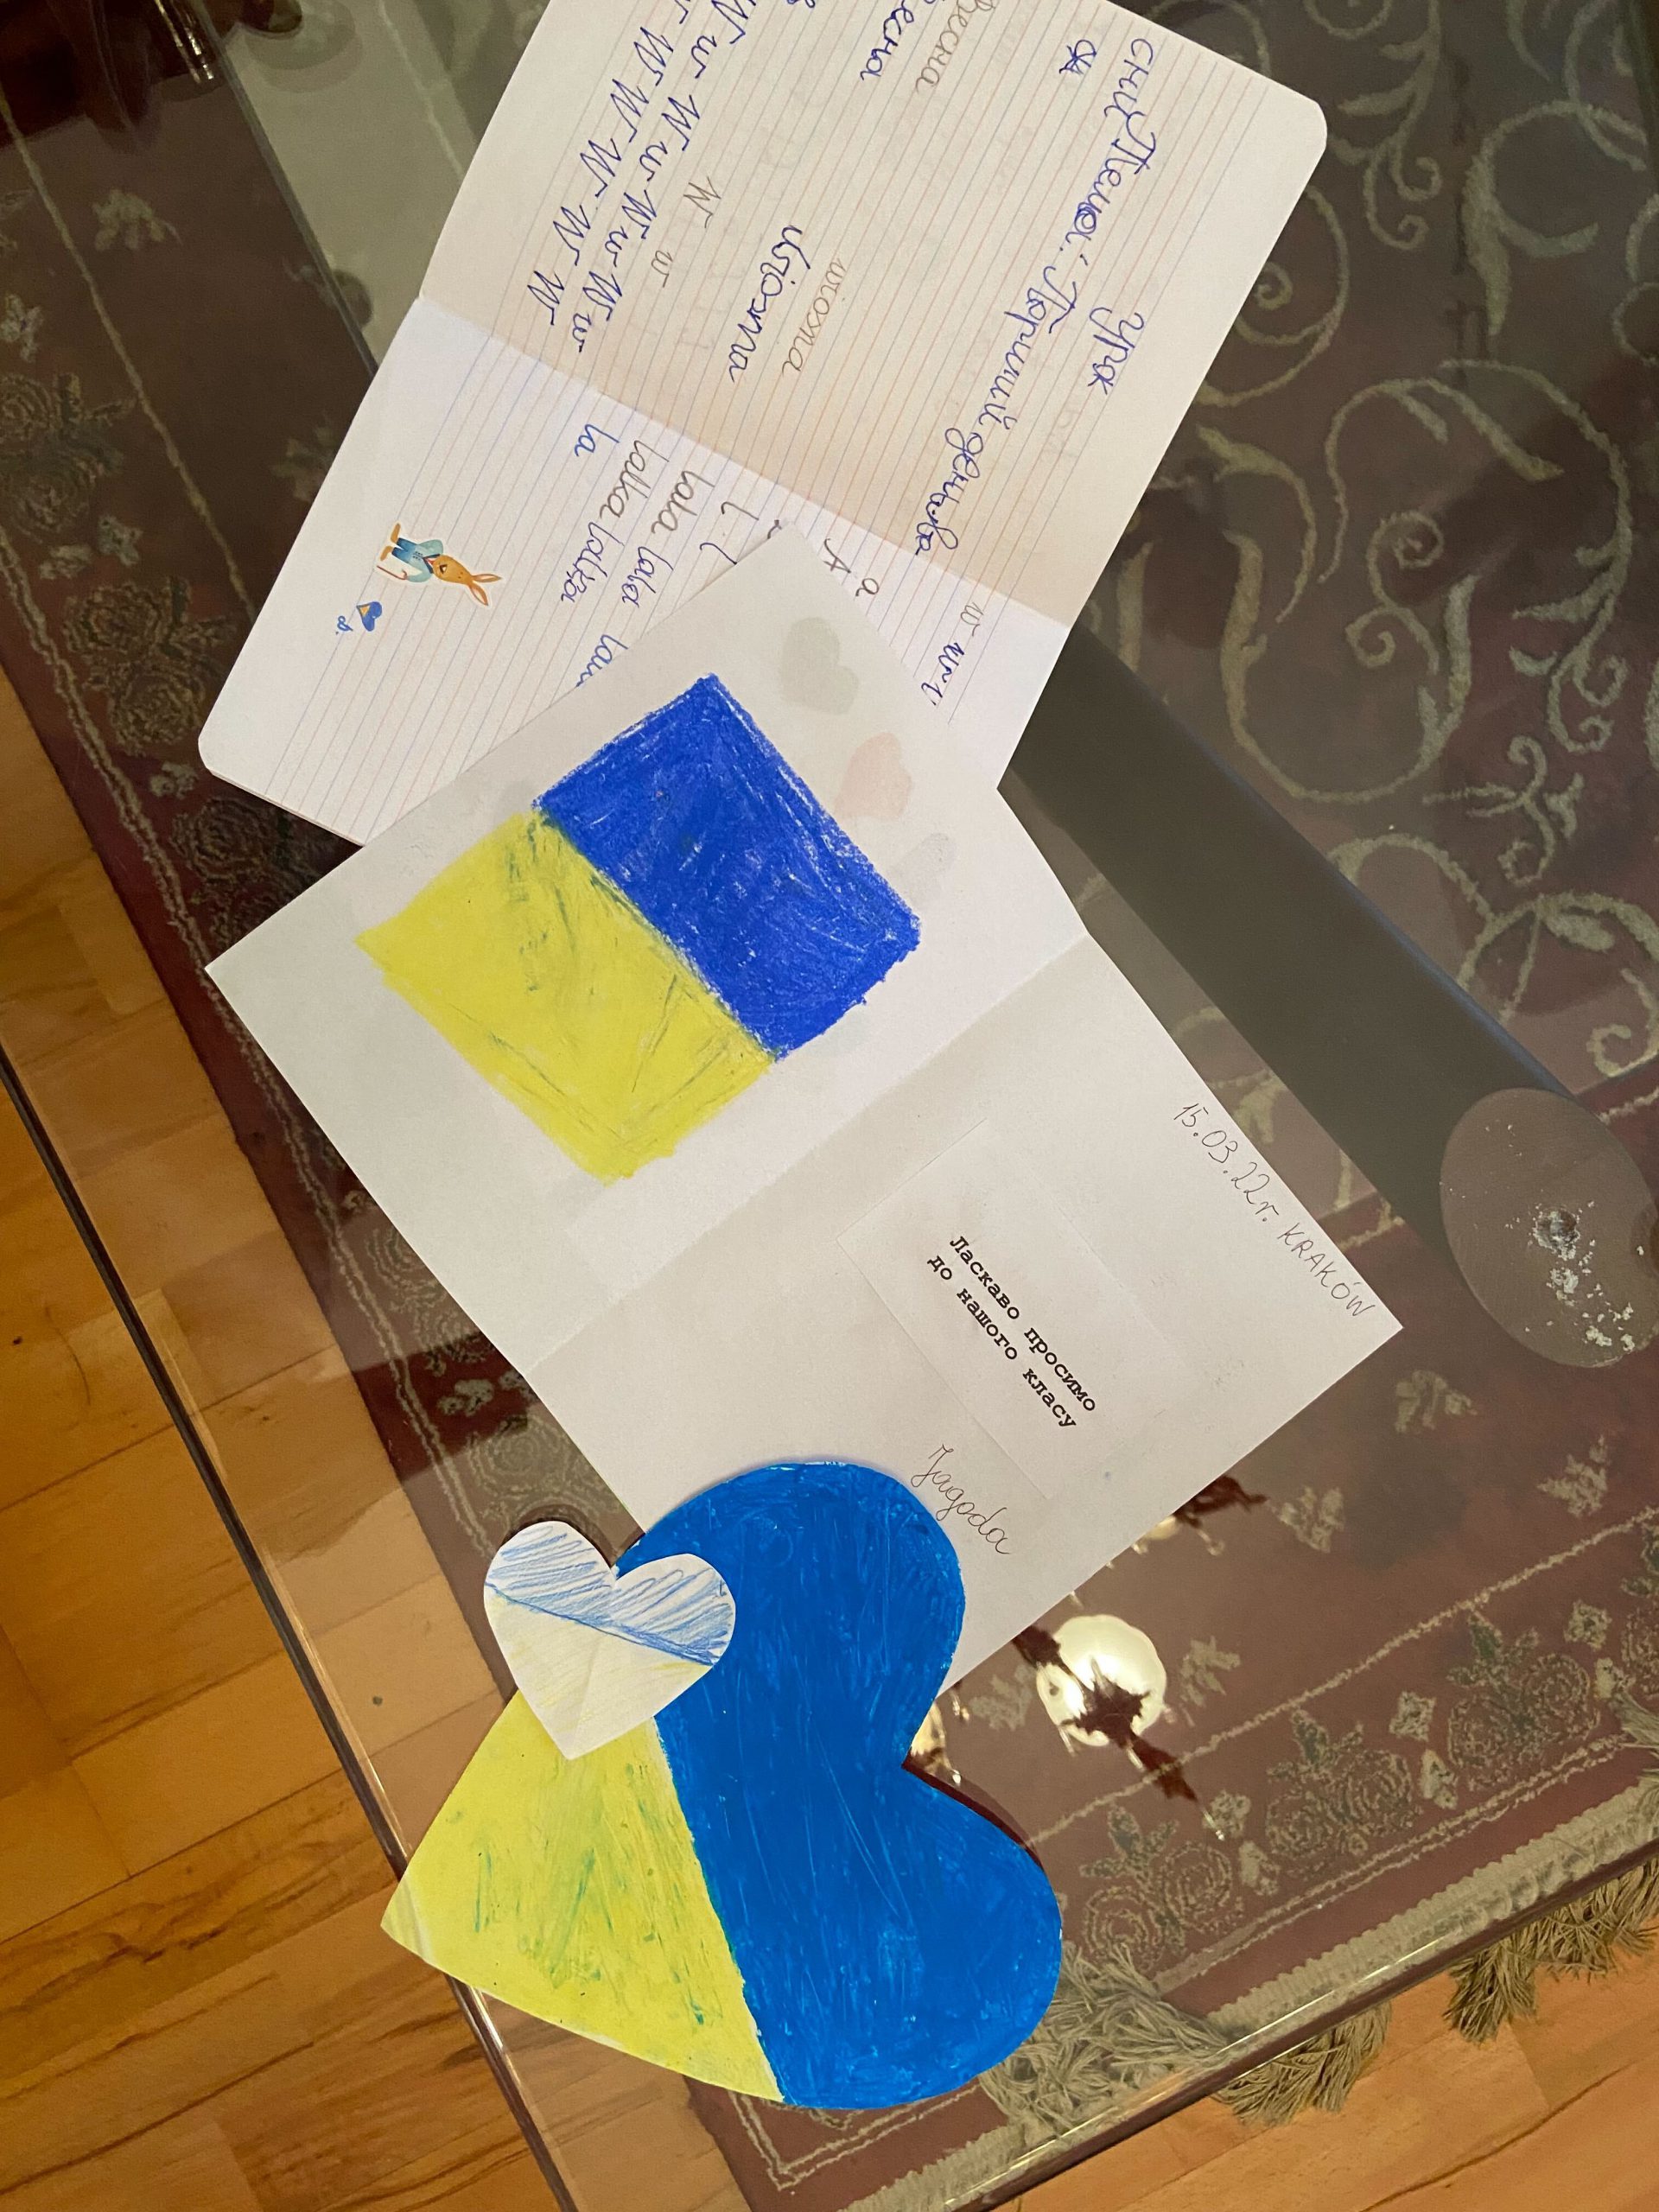 «Ми разом, ми раді вітати тебе тут!»: як польські учні підтримують українських переселенців image from ios 2 1 scaled